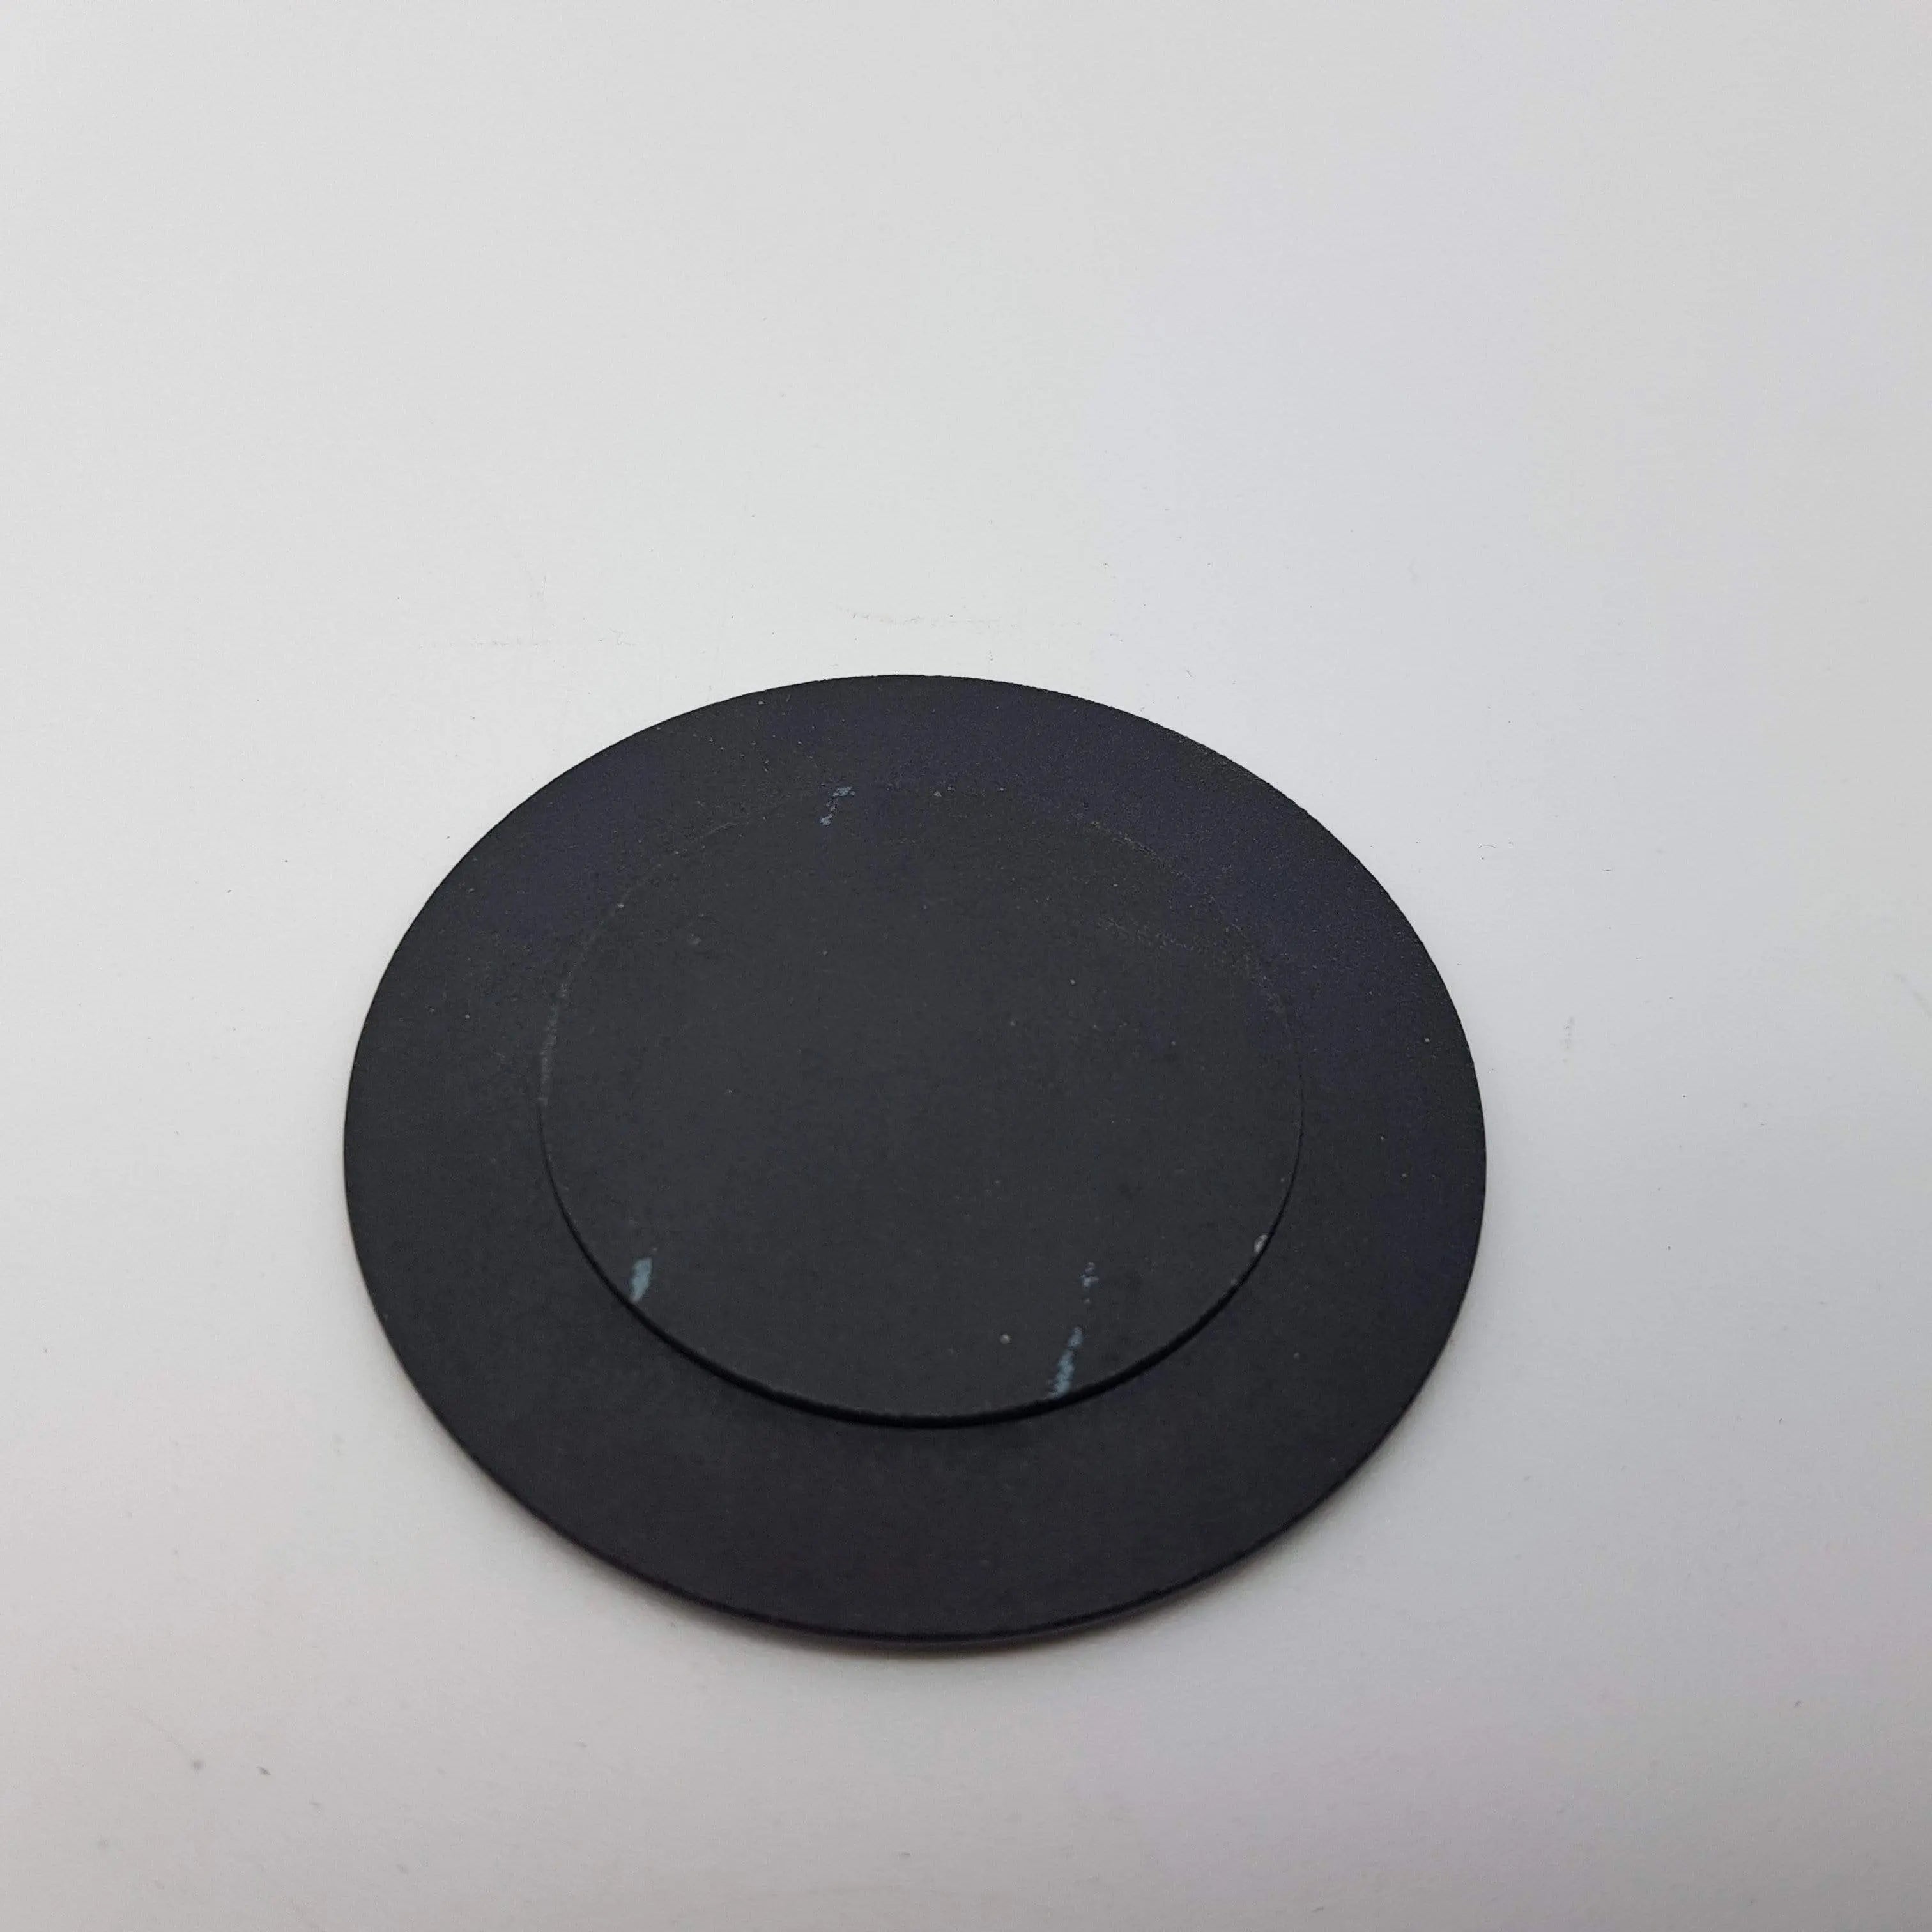 copri spartifiamma nero piccolo diametro 5,5 cm ELECTROLUX